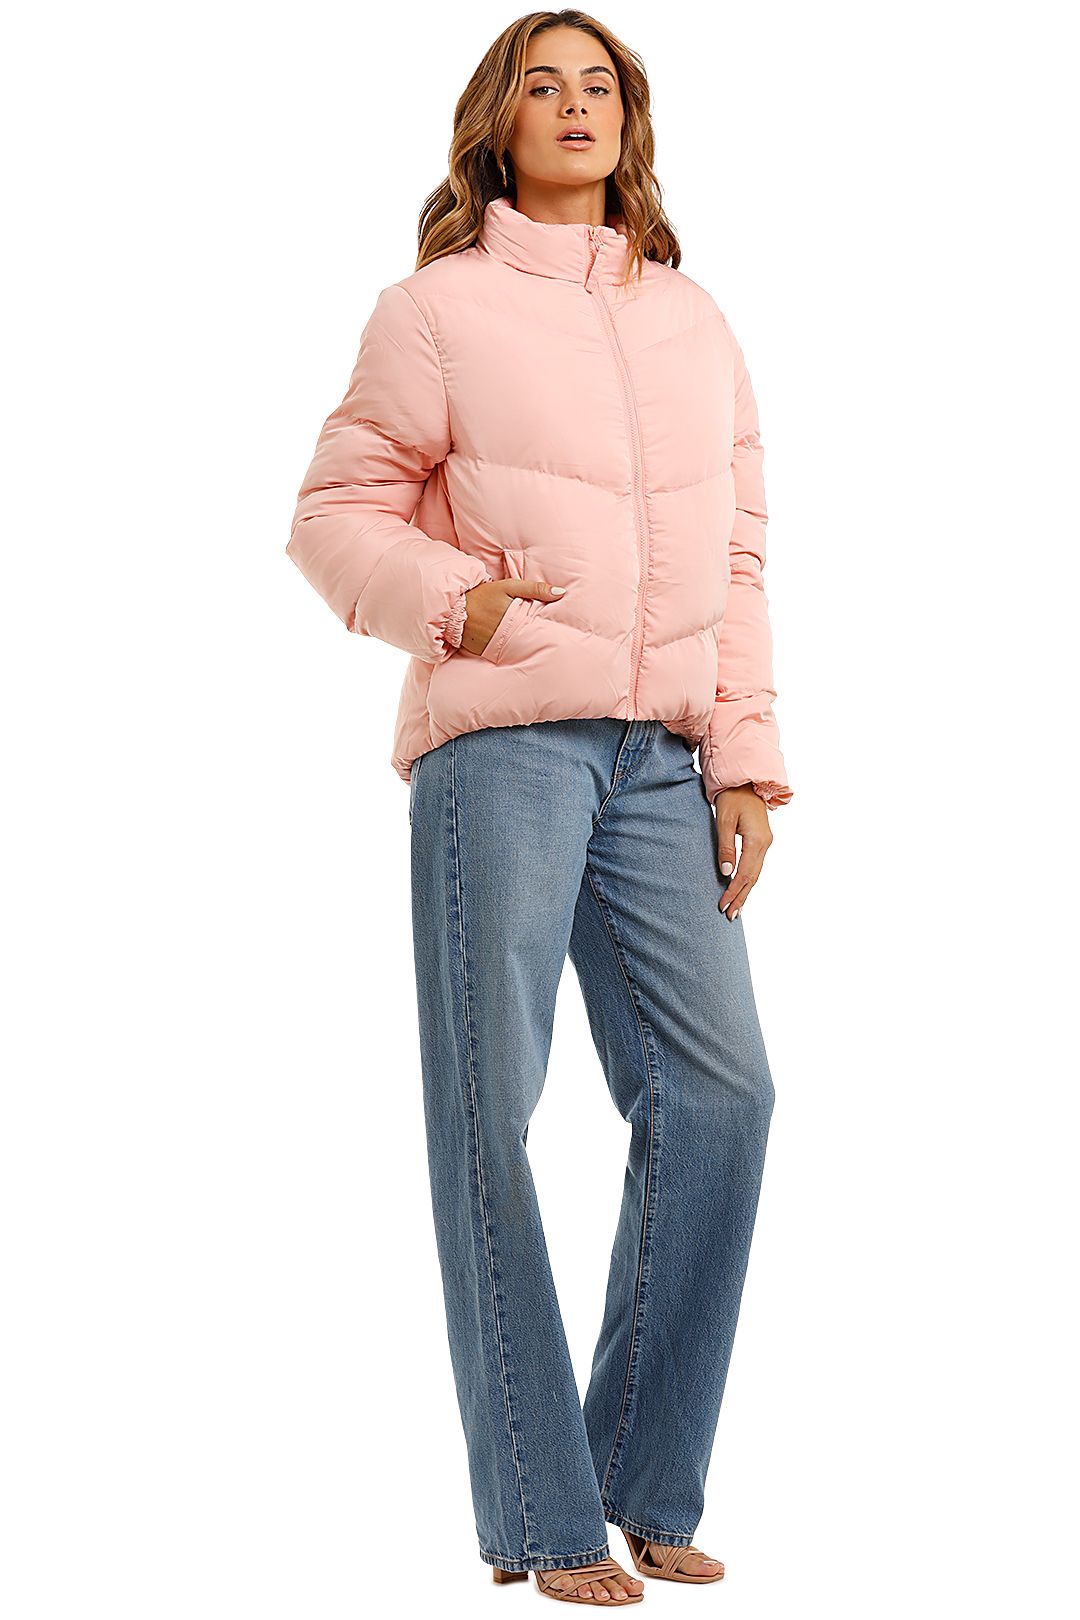 Bande Studio V Line Puffer Jacket Pink long sleeve